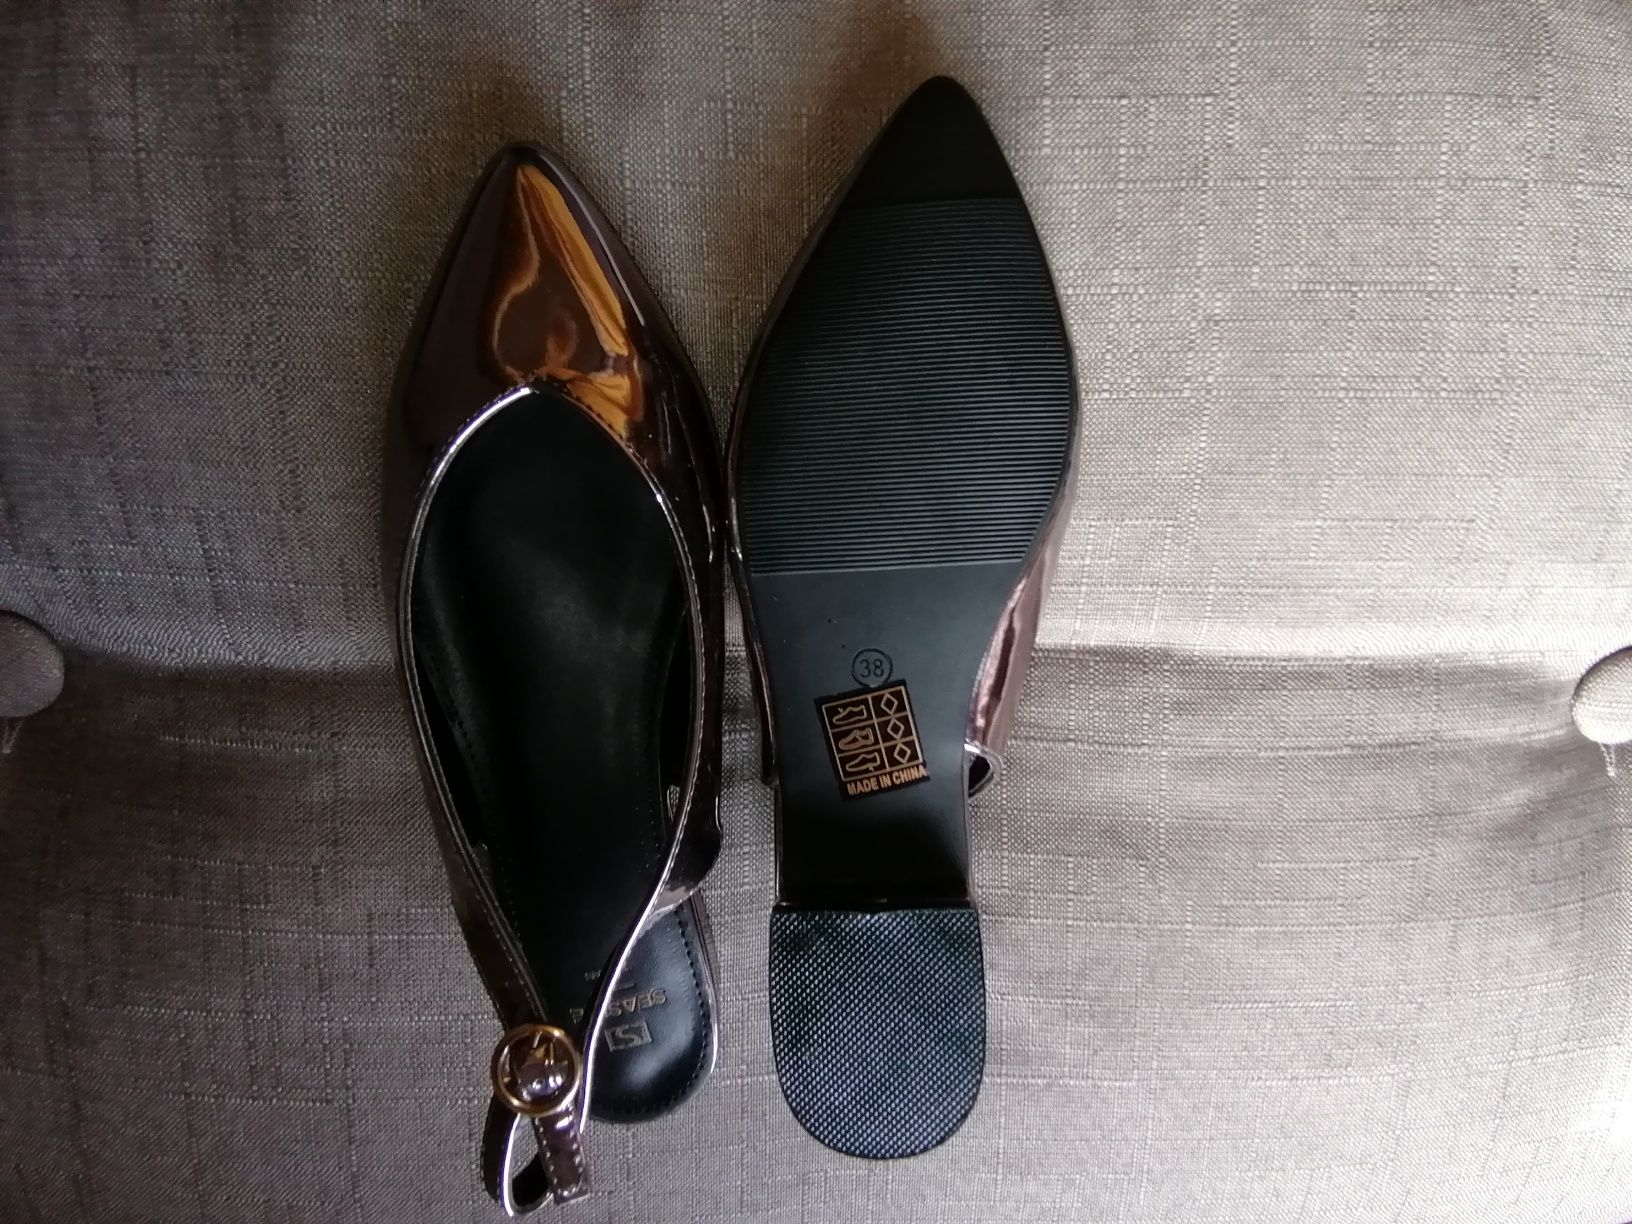 Botas e sapatos tamanho 37